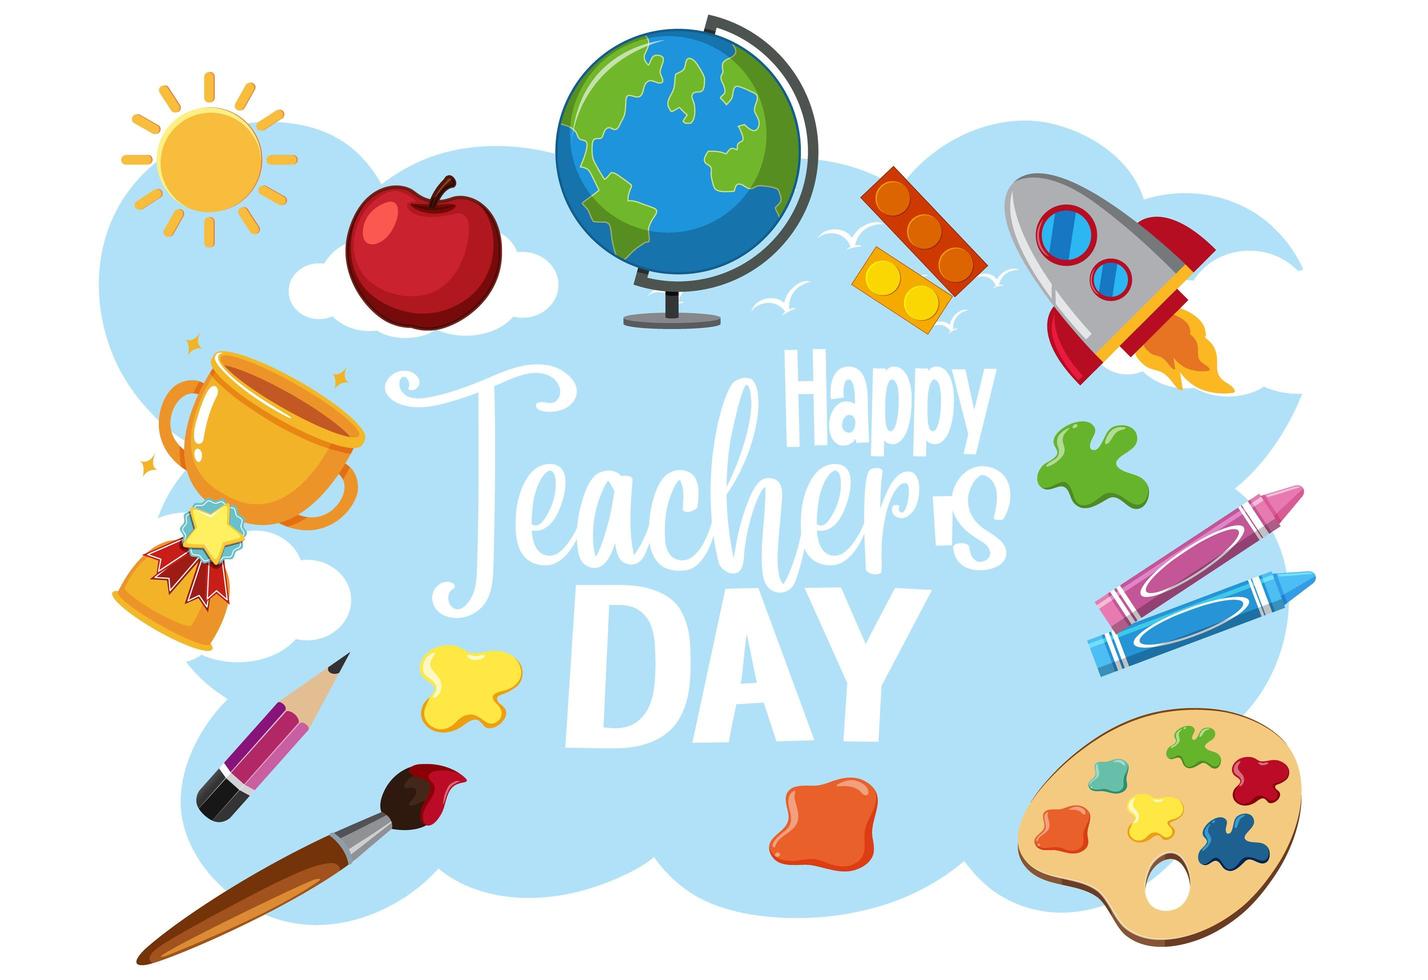 logo della giornata mondiale dell'insegnante felice con articoli per studenti vettore